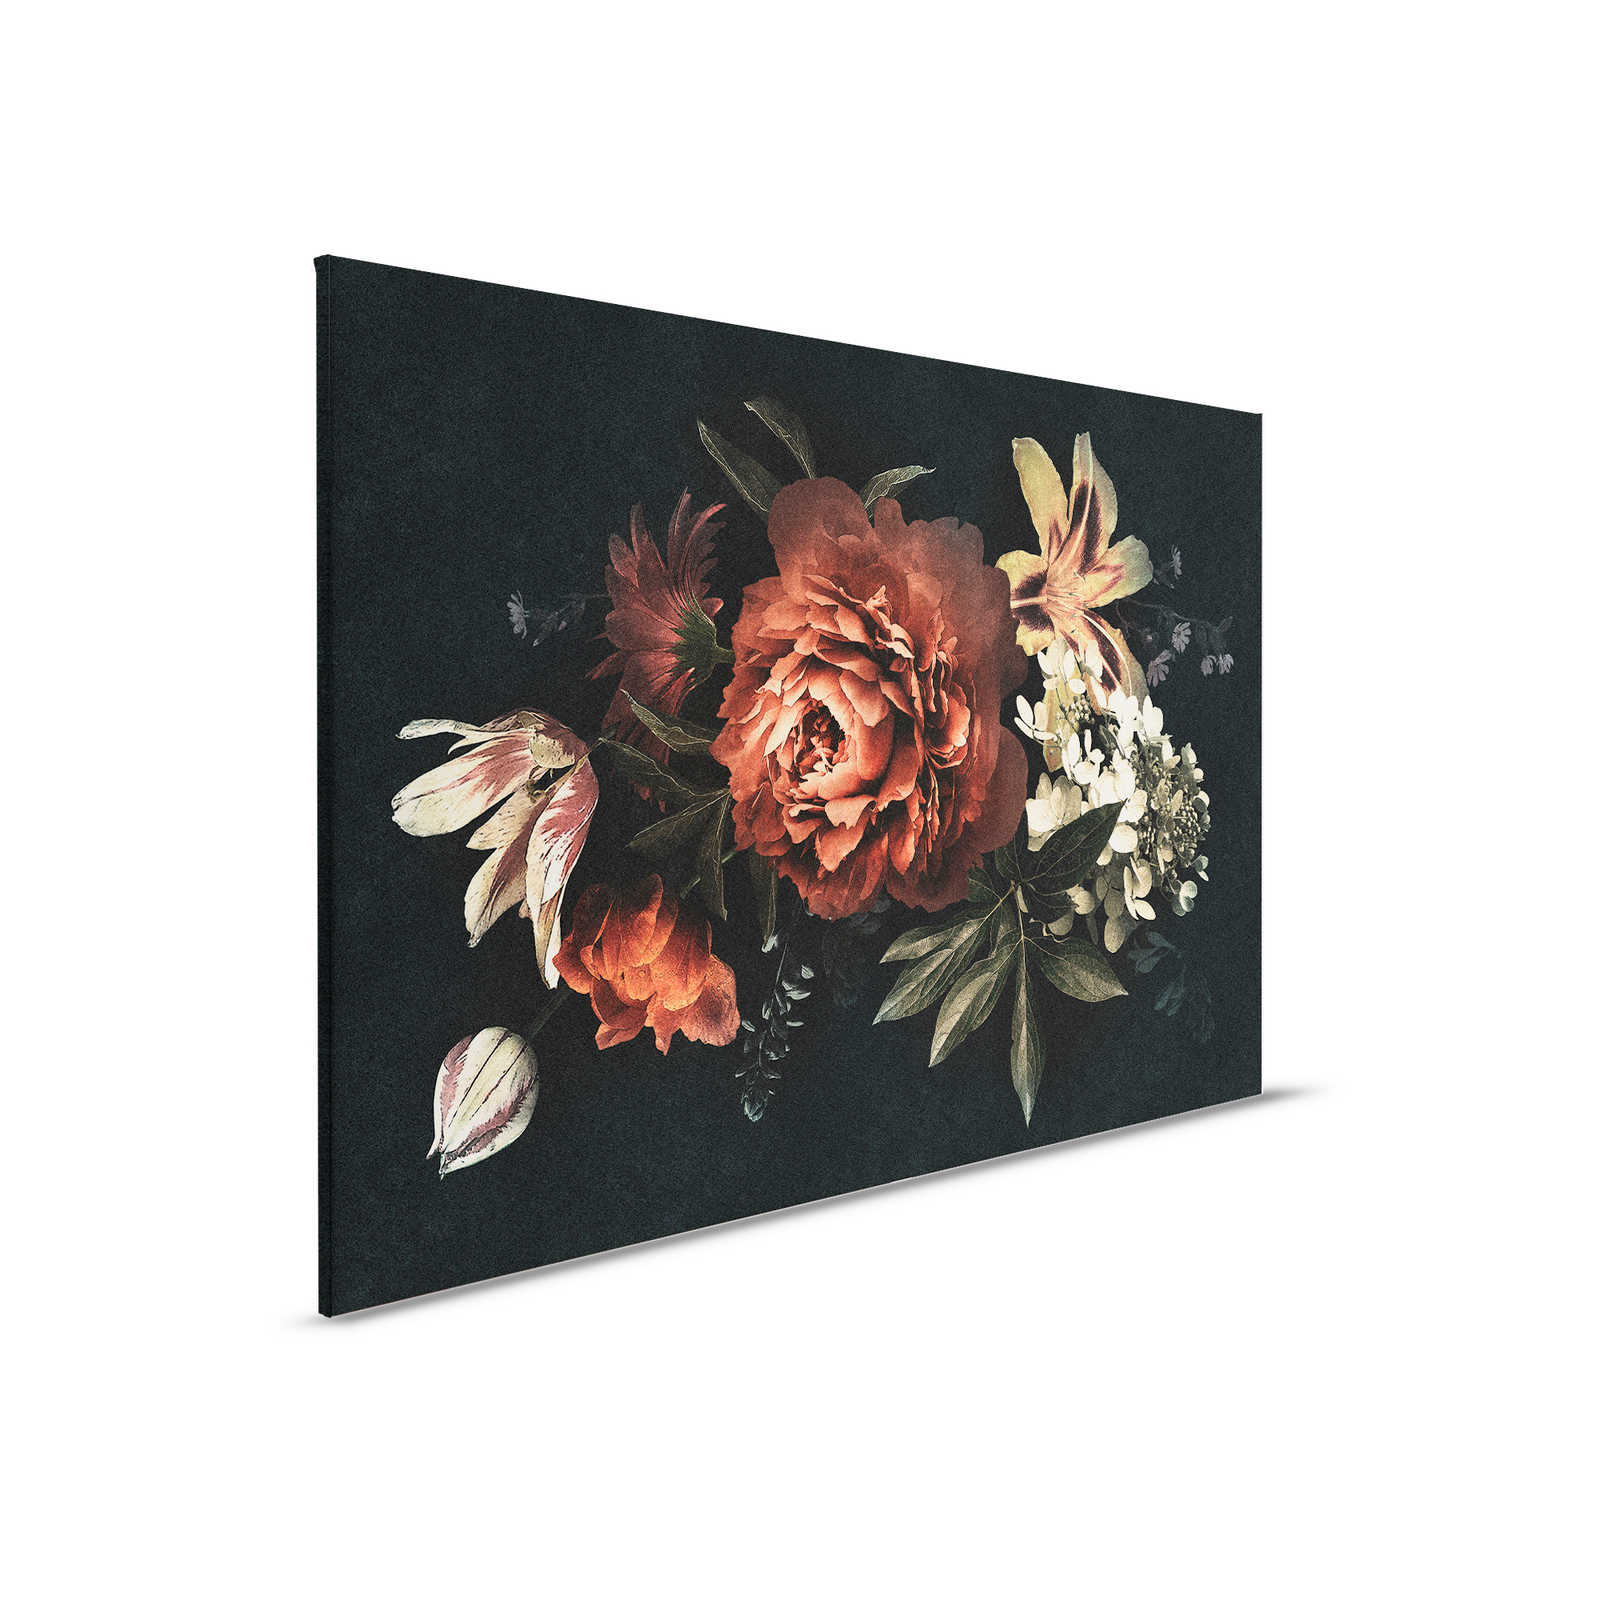         Drama queen 1 - Blumenstrauß Leinwandbild mit dunklem Hintergrund in Pappe Struktur – 0,90 m x 0,60 m
    